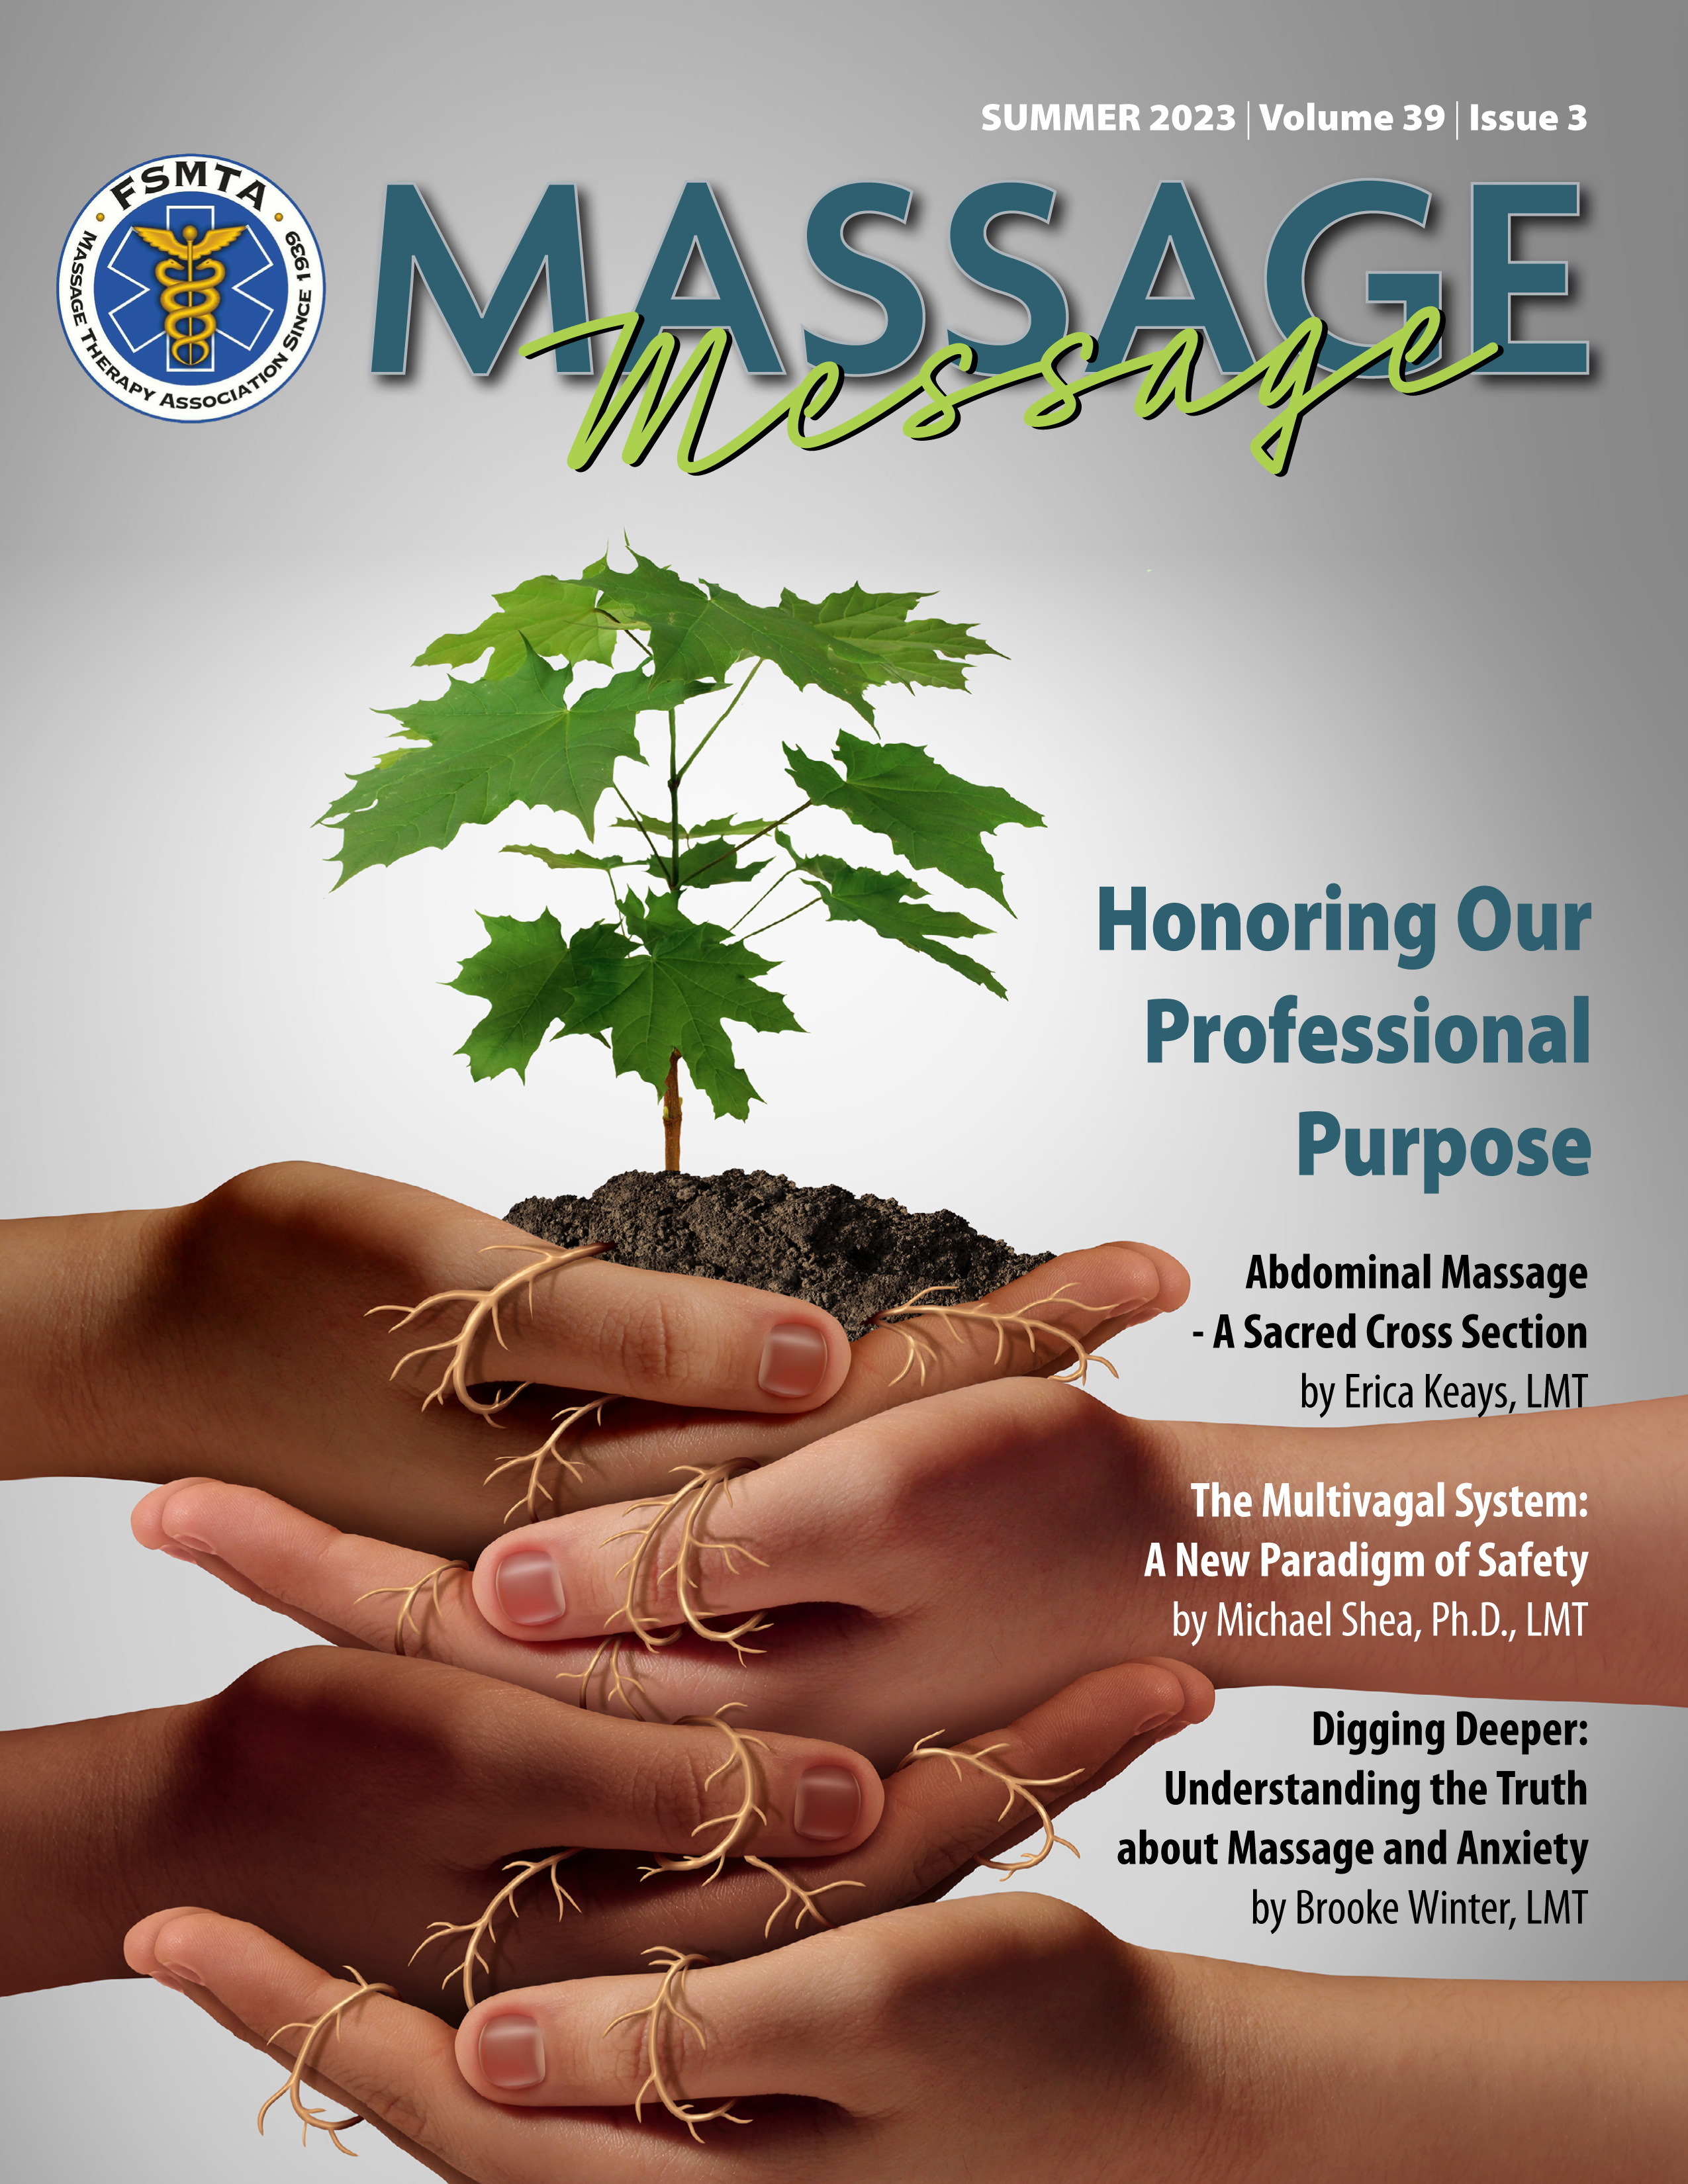 FSMTA Massage Message Magazine Summer 2023 Issue